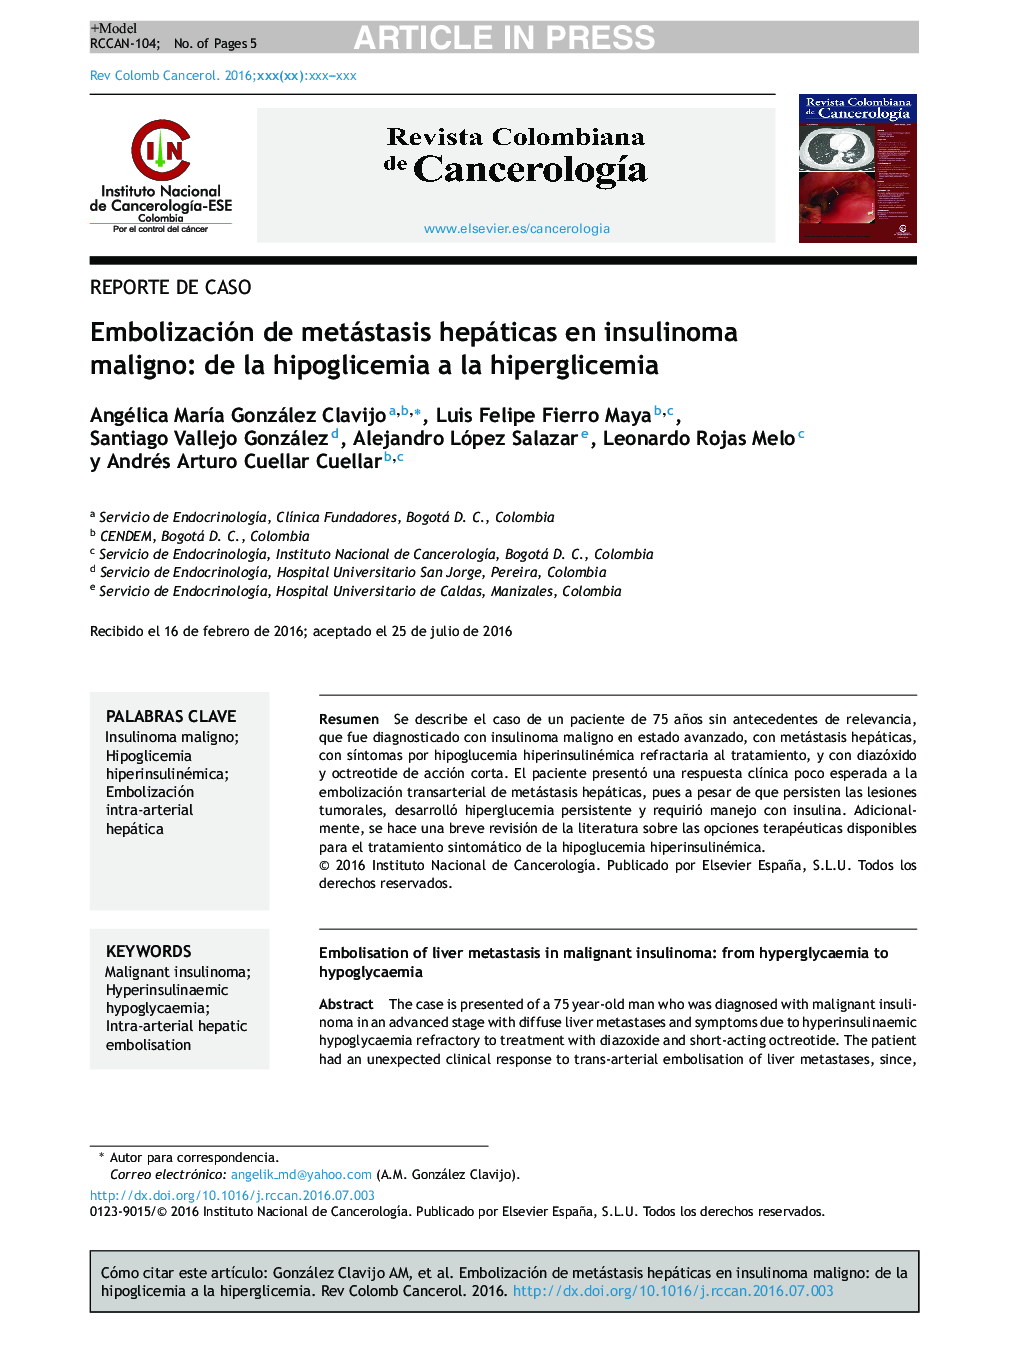 Embolización de metástasis hepáticas en insulinoma maligno: de la hipoglicemia a la hiperglicemia